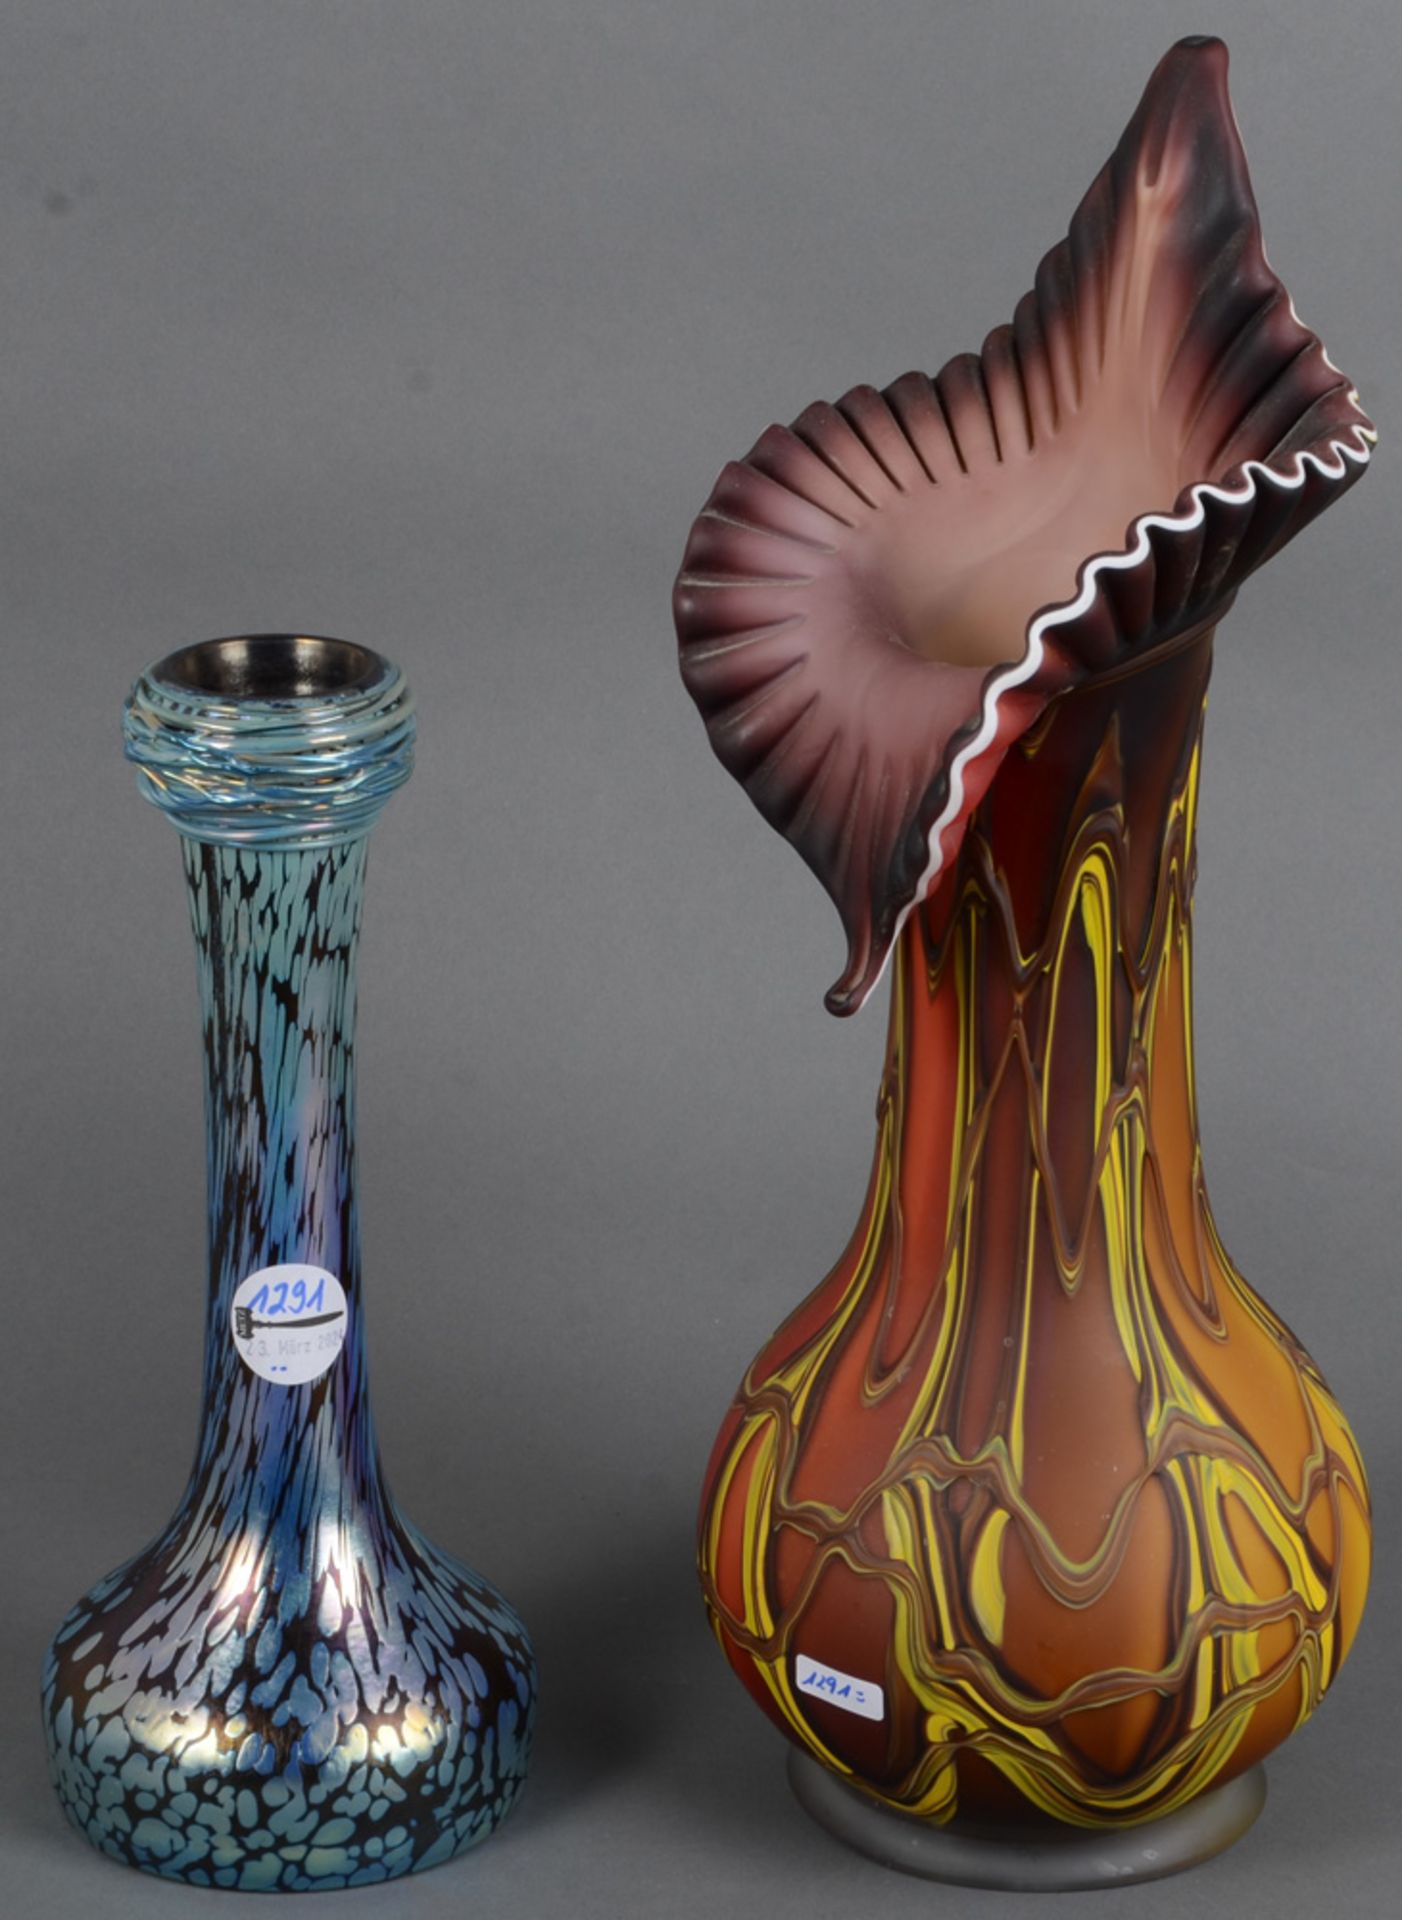 Zwei Vasen, u.a. Pallme, König & Habel um 1900. Farbloses Glas, farbig überfangen, mit